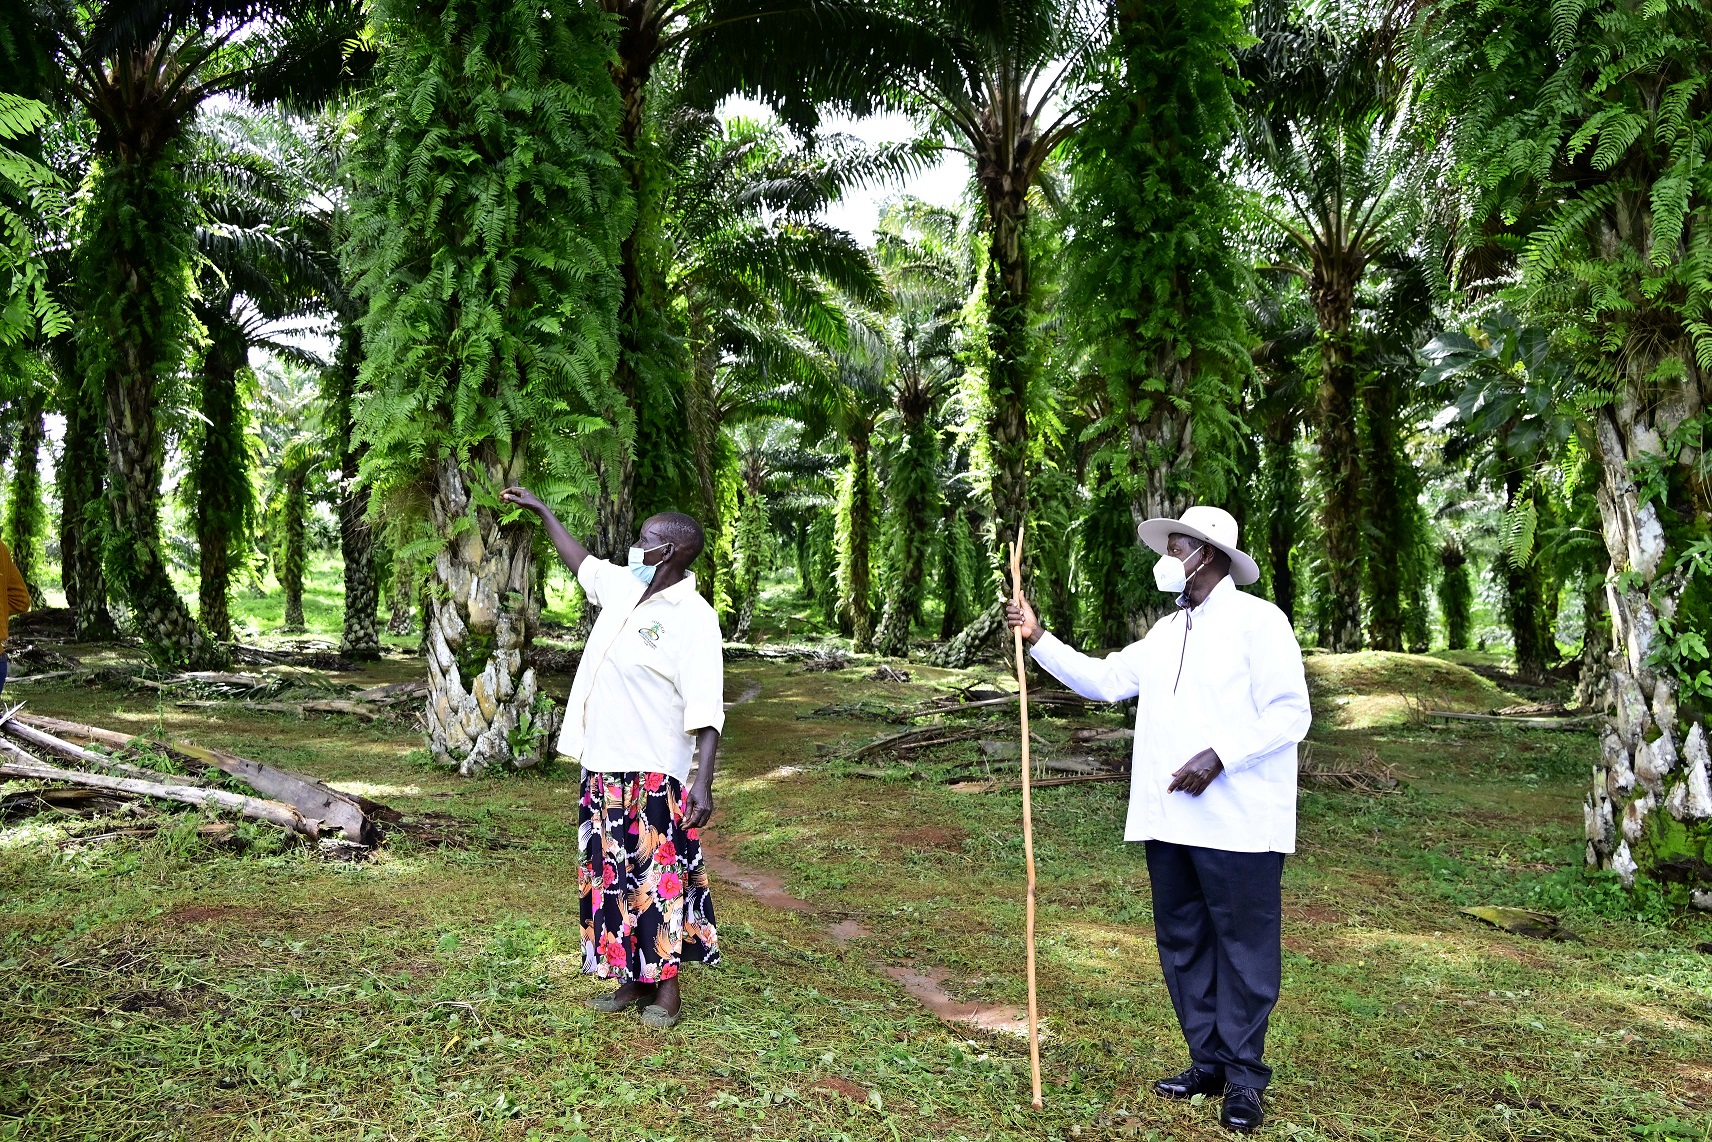 Museveni, Kalangala'daki iki model çiftçiyi ziyaret etti ve Ugandalılara yoksullukla mücadelede onları taklit etmelerini tavsiye etti